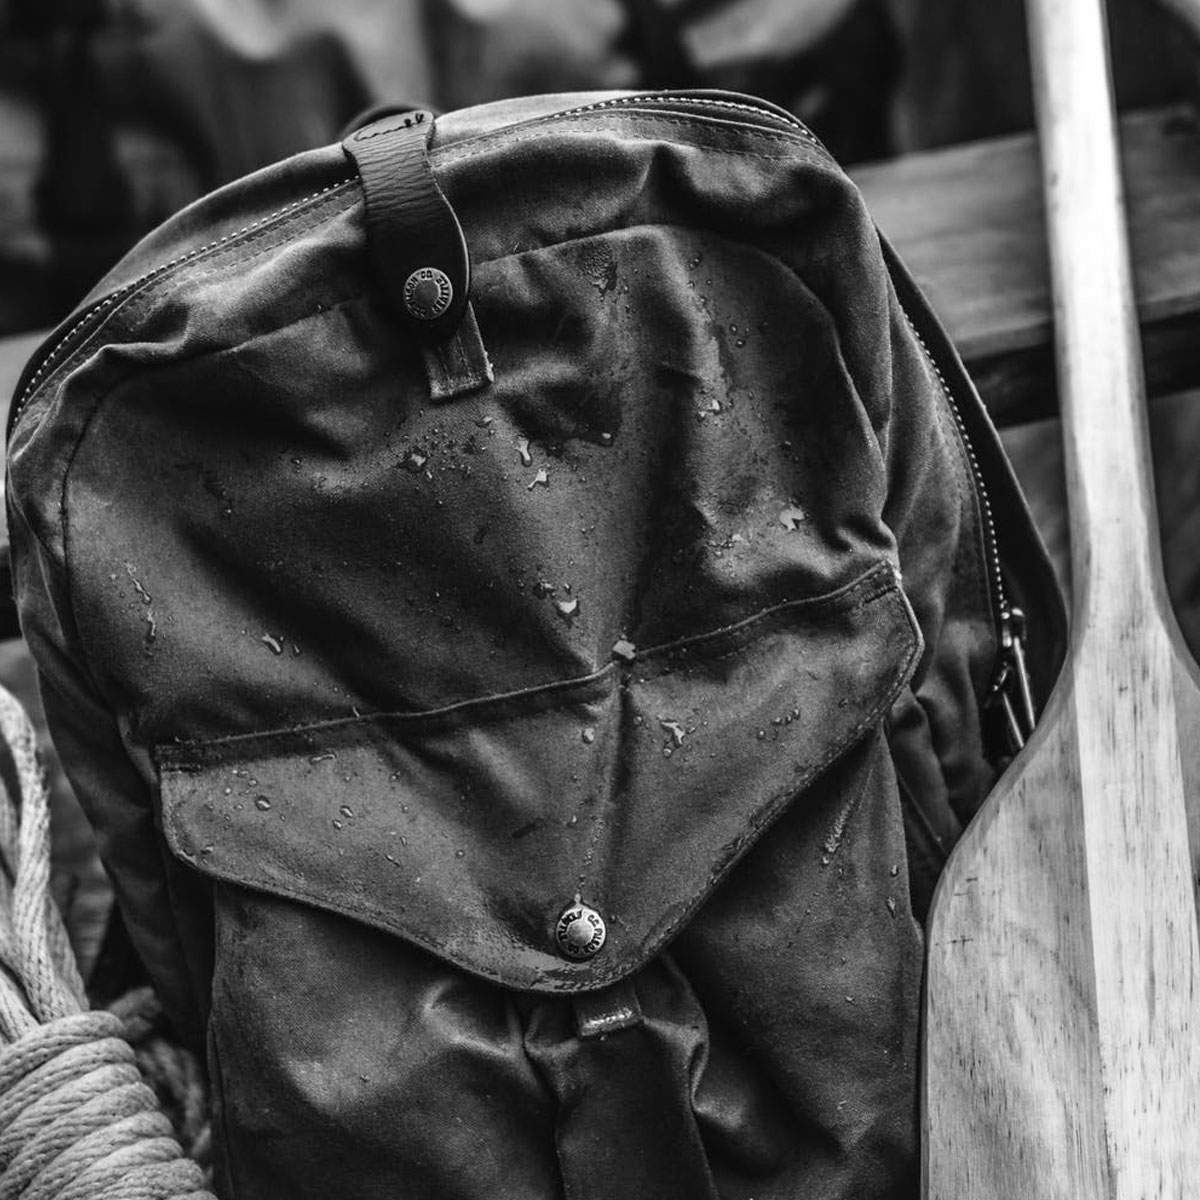 Filson Journeyman Backpack Dark Tan/Flame, für schwere Lasten mit wasserabweisender, abriebfester Leistung